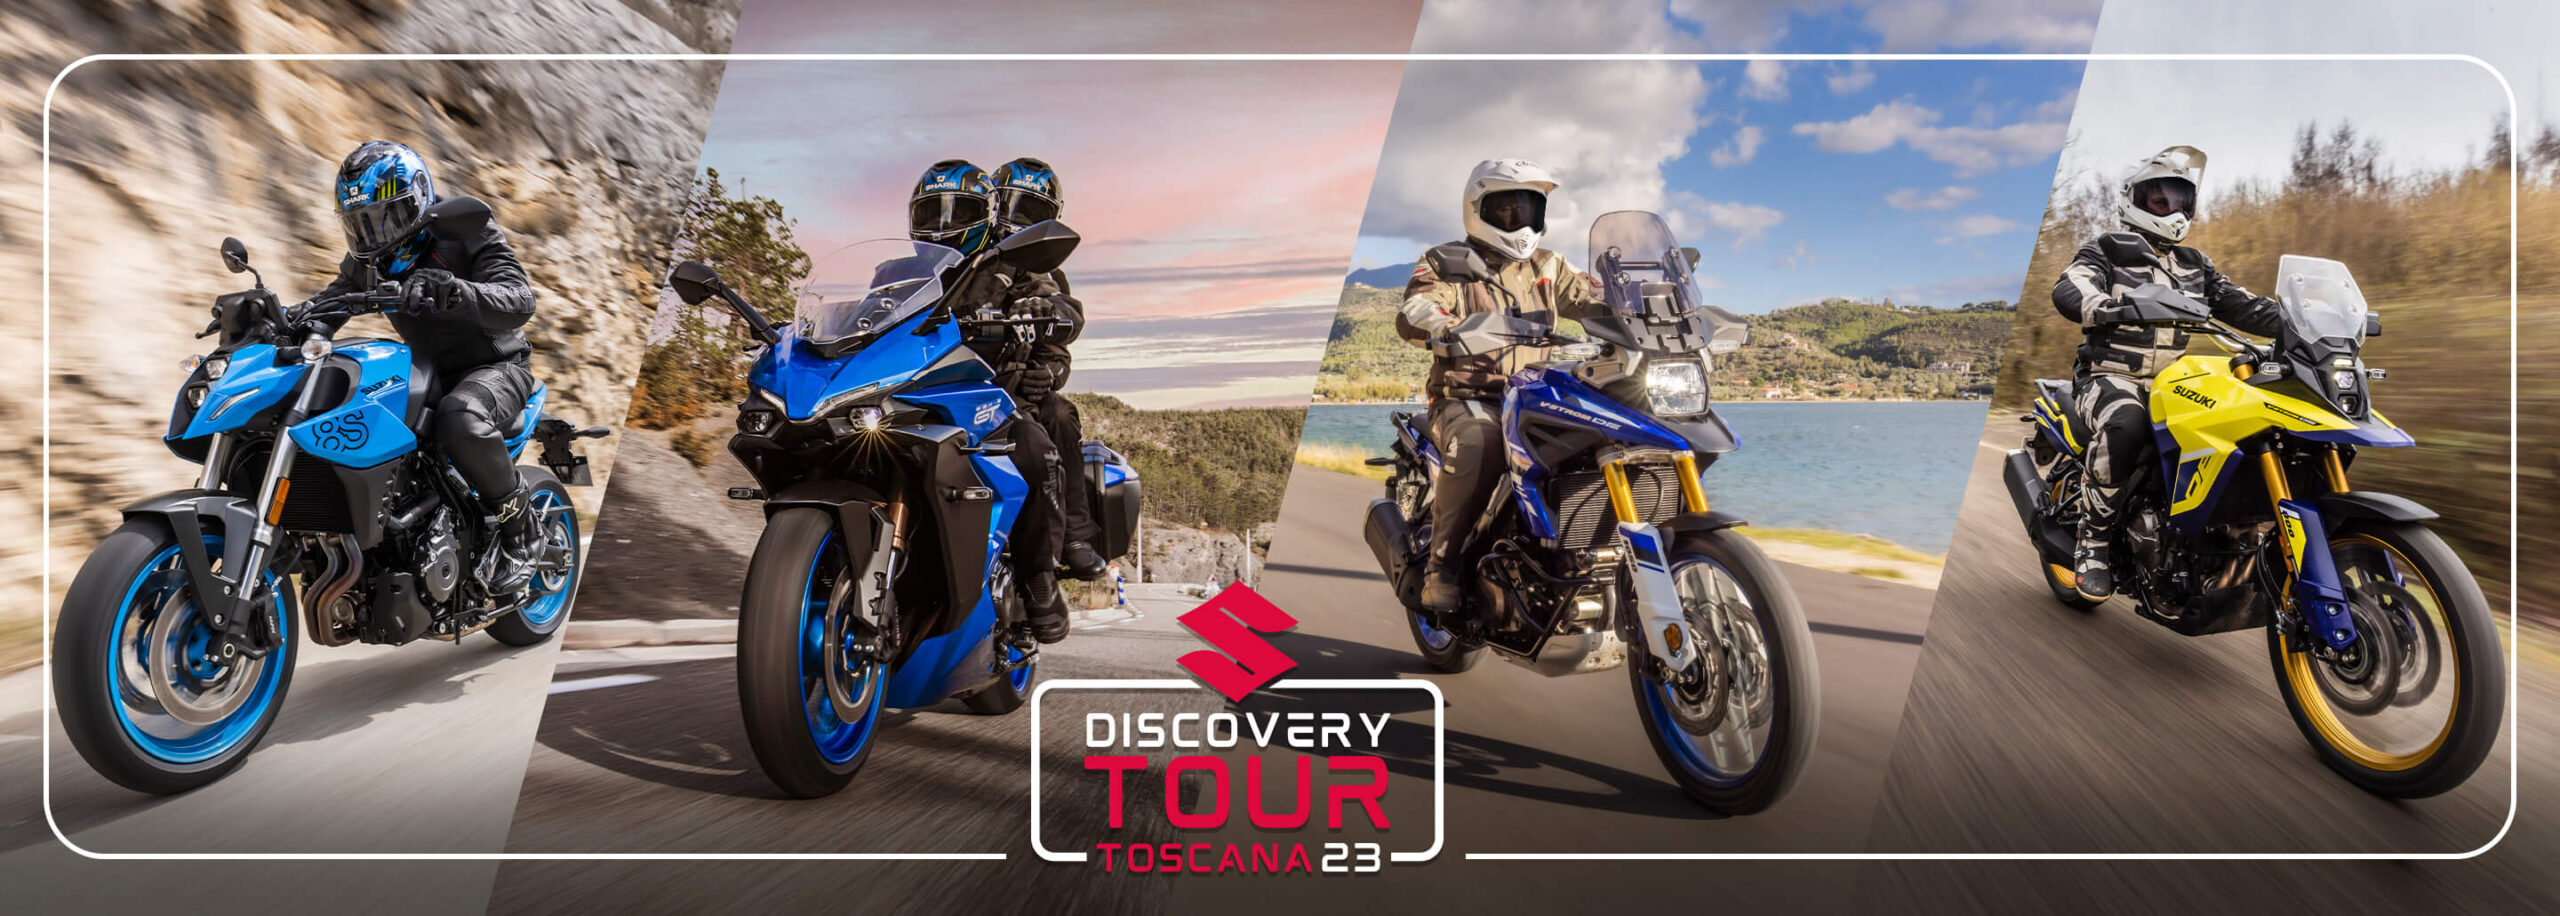 Suzuki Discovery Tour